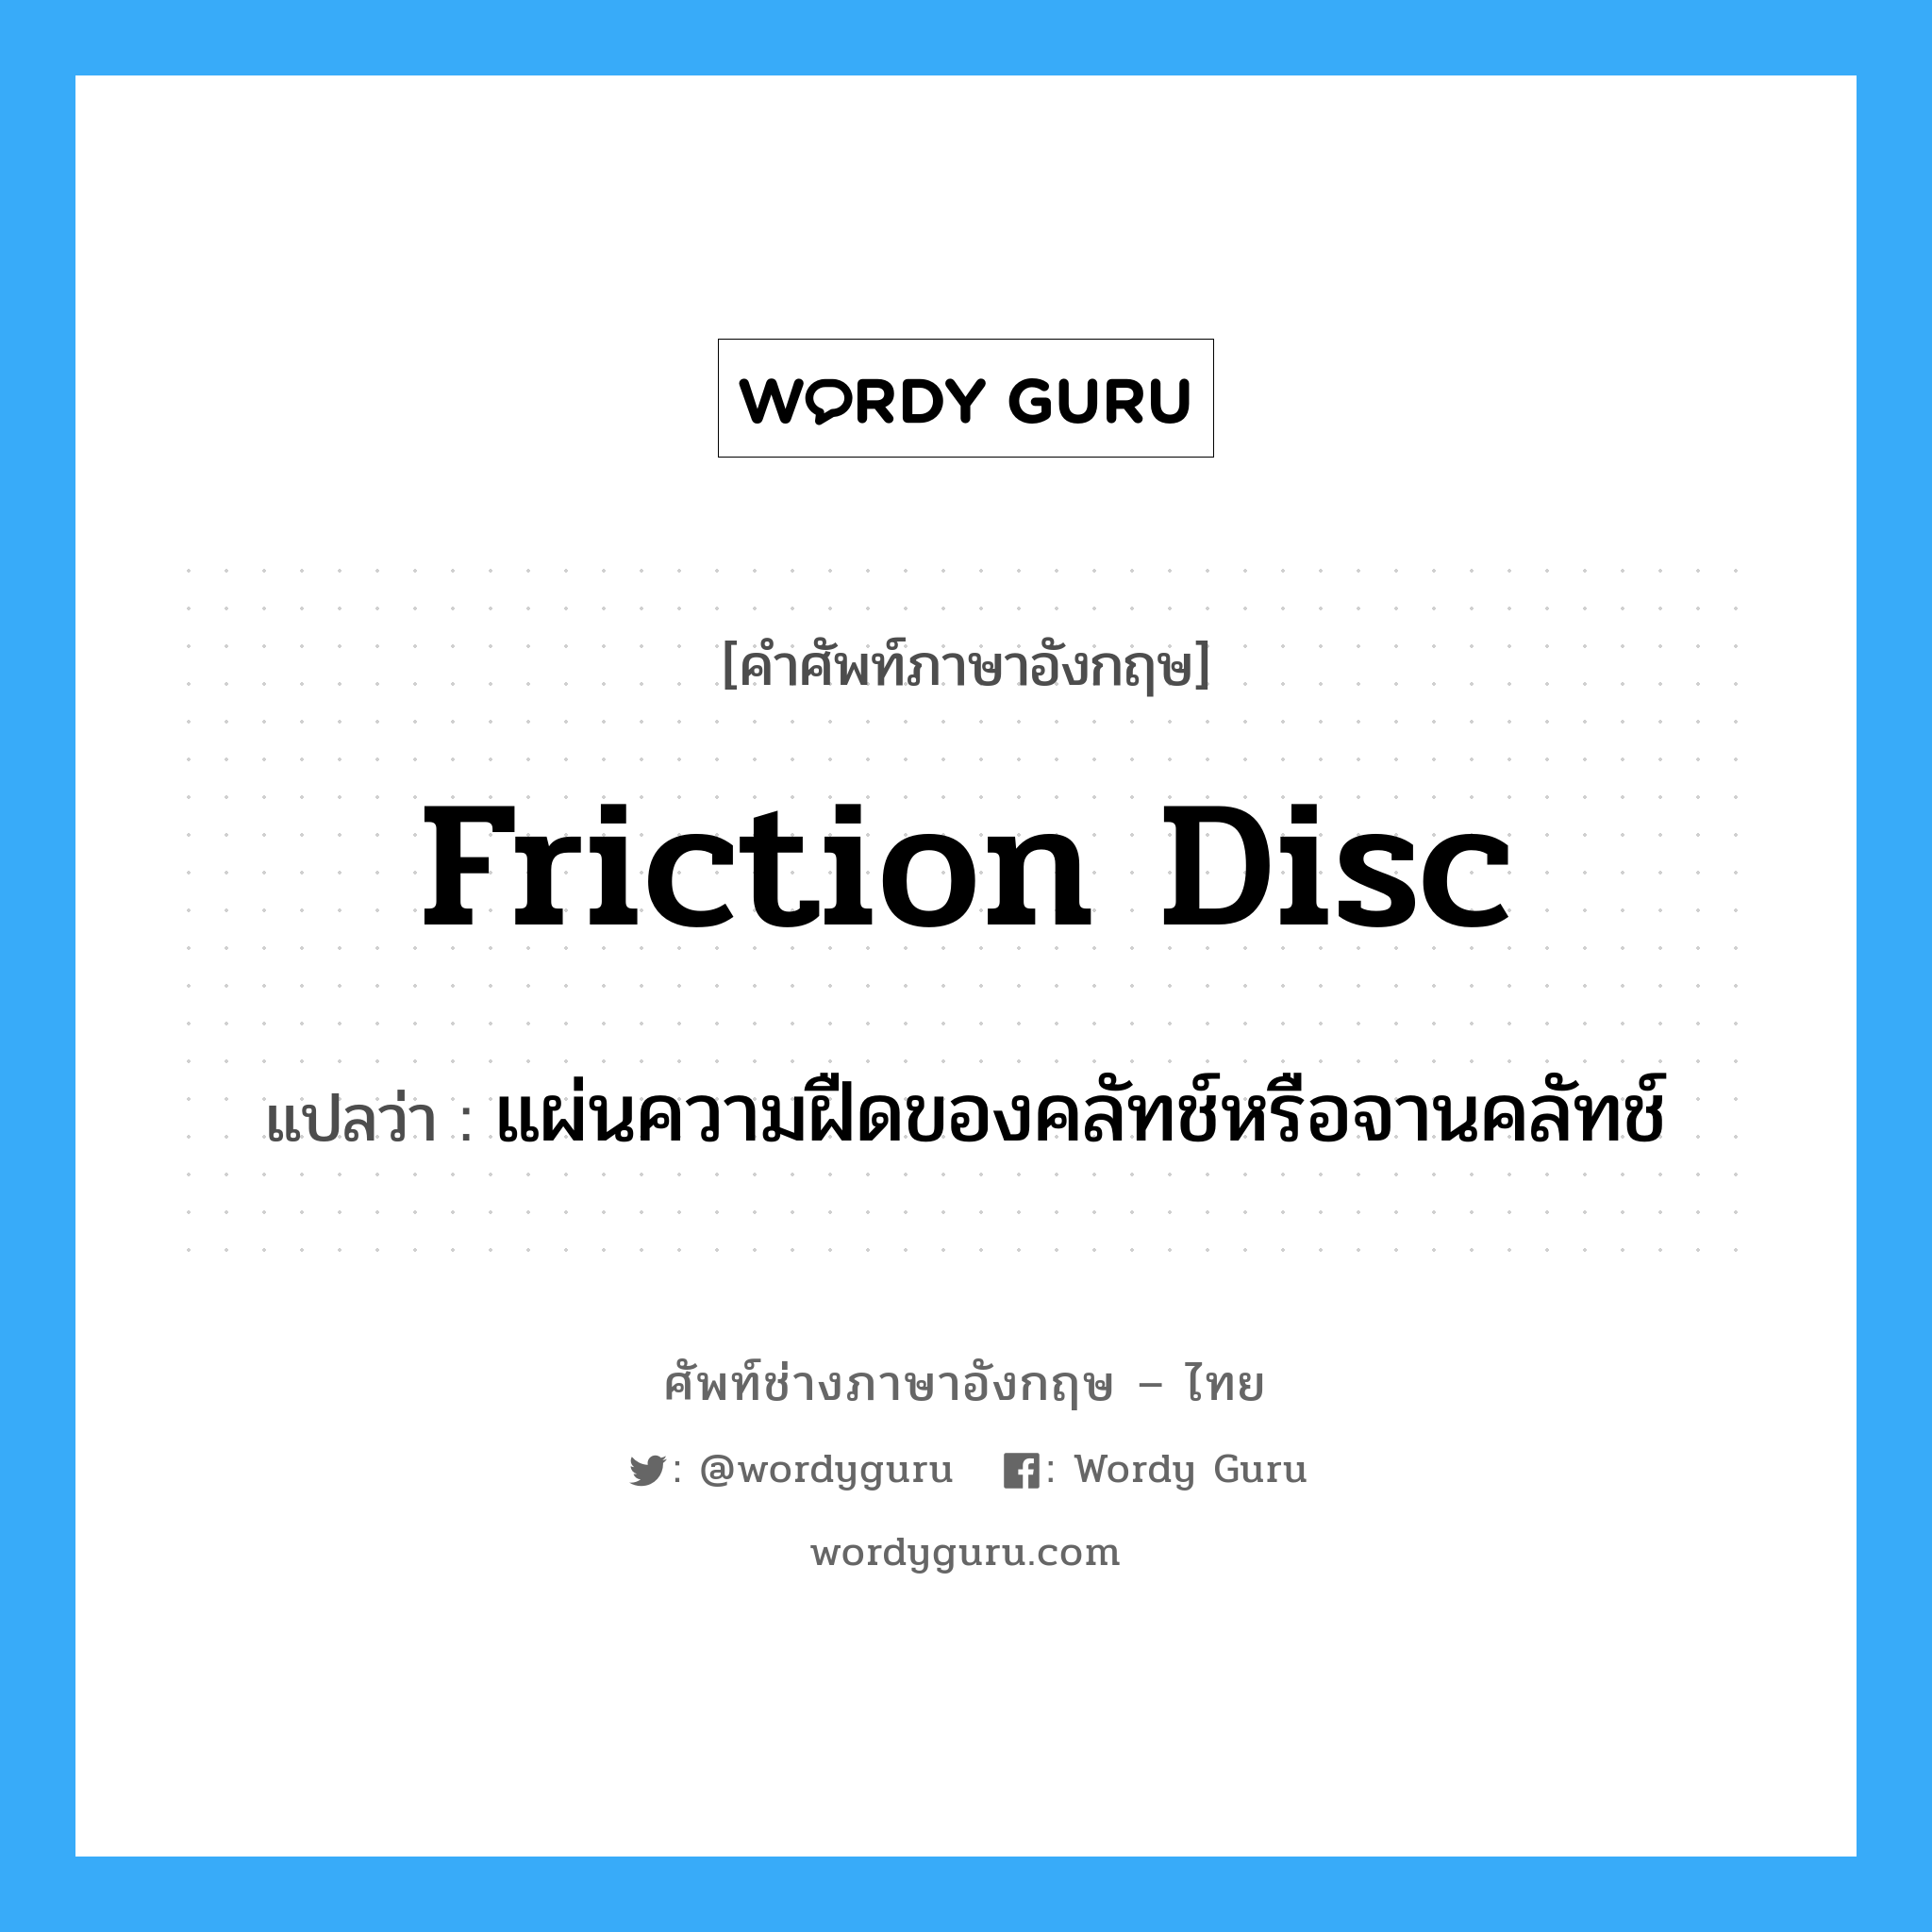 friction disc แปลว่า?, คำศัพท์ช่างภาษาอังกฤษ - ไทย friction disc คำศัพท์ภาษาอังกฤษ friction disc แปลว่า แผ่นความฝืดของคลัทช์หรือจานคลัทช์